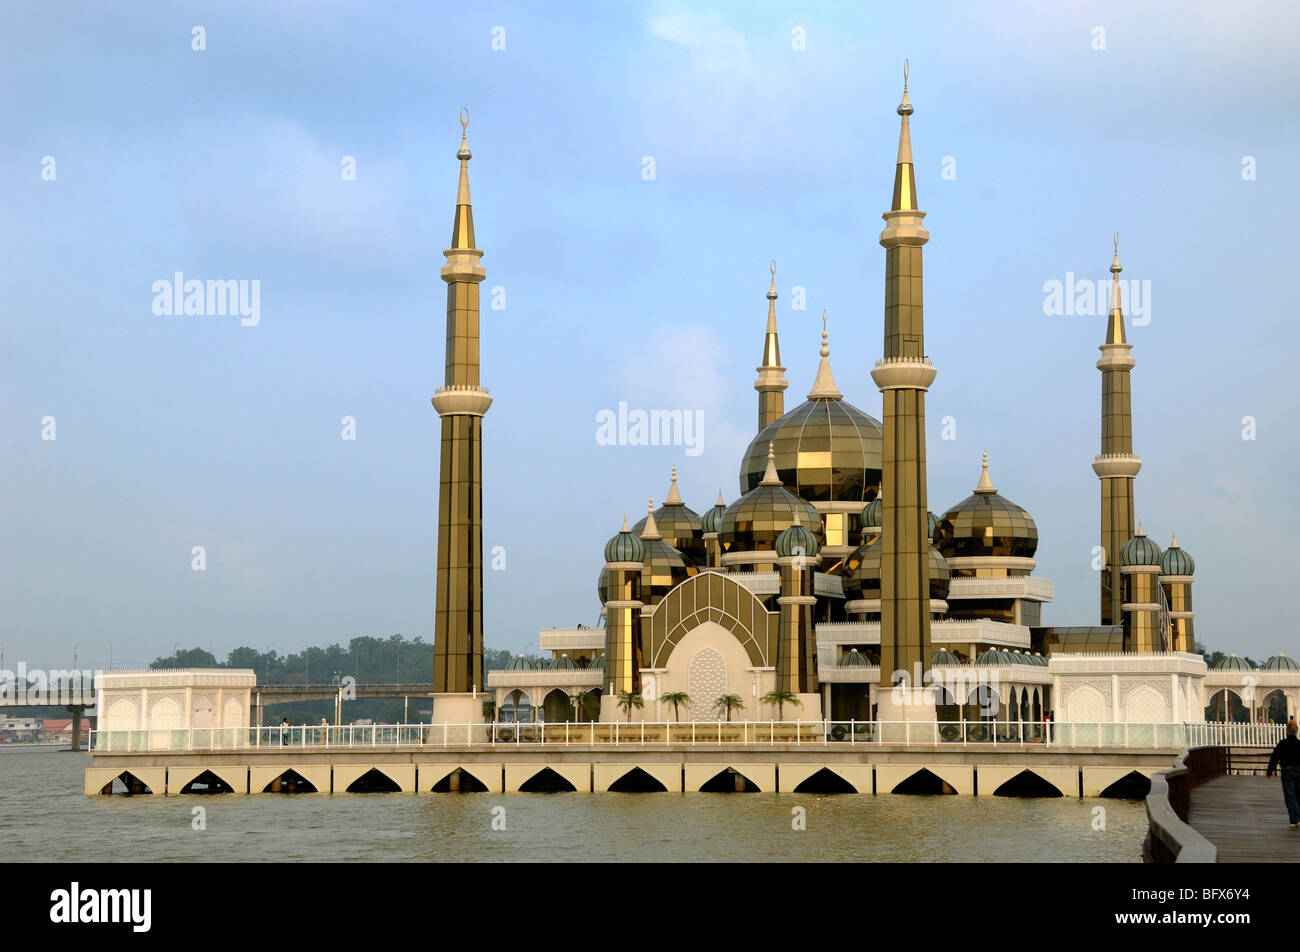 Minarette und Kuppeln der durchsichtigen Kristallmoschee oder Masjid Kristal, die auf Stelzen am Terengganu-Fluss, Kuala Terengganu, Malaysia, errichtet wurde Stockfoto